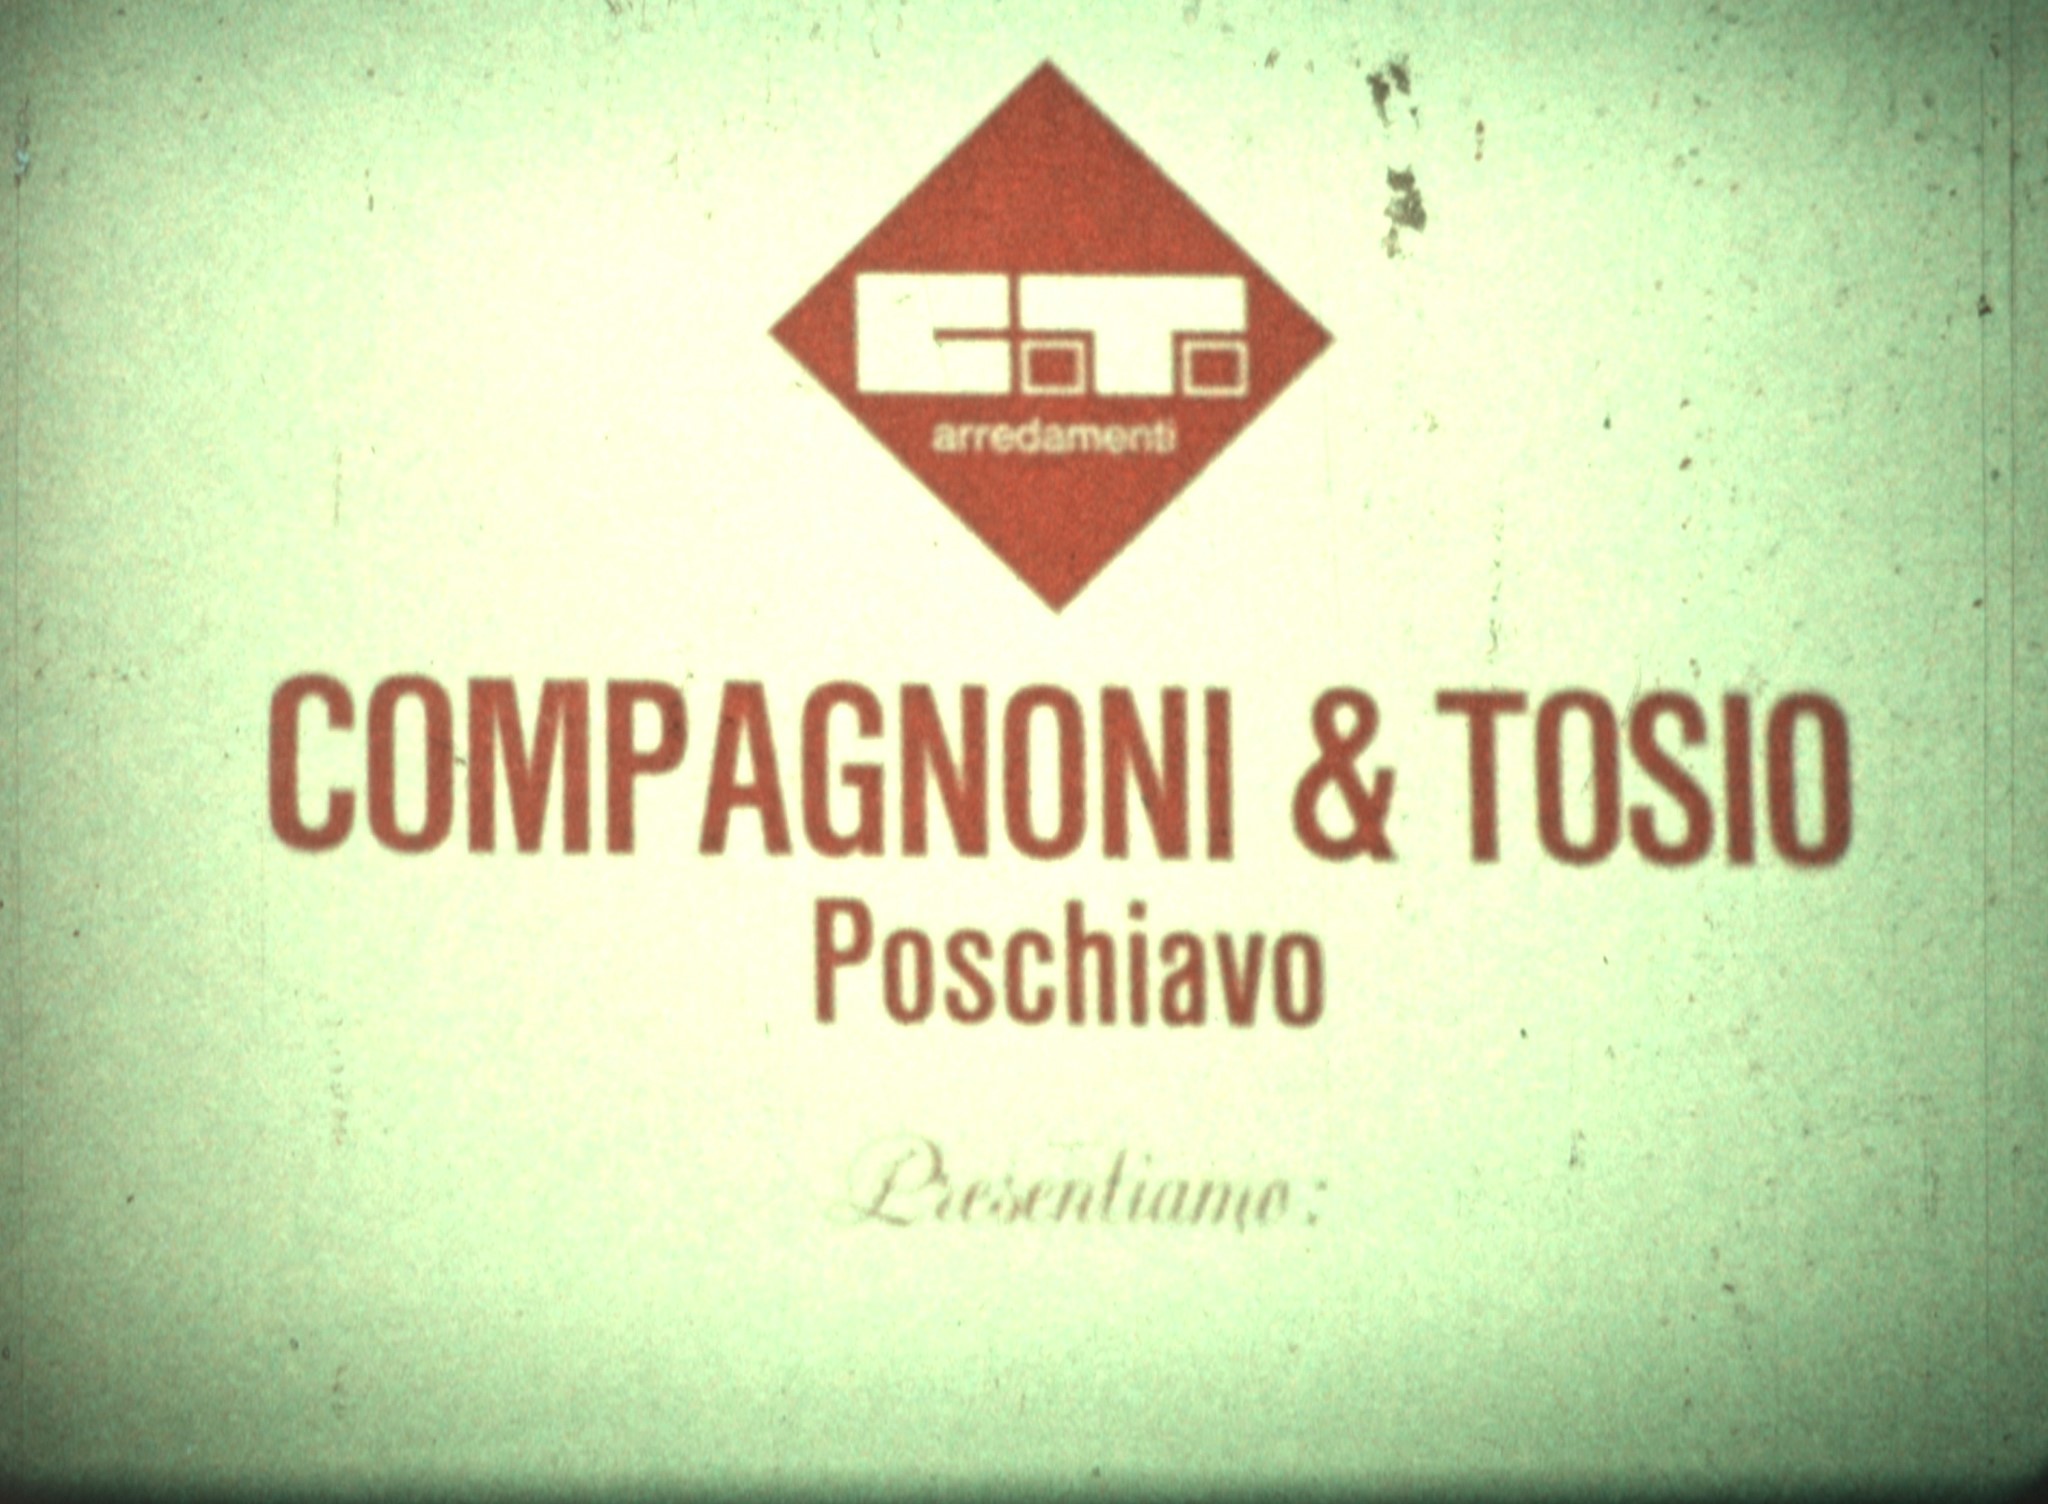 C.T. arredamenti Compagnoni & Tosio Poschiavo (1960er Jahre
)